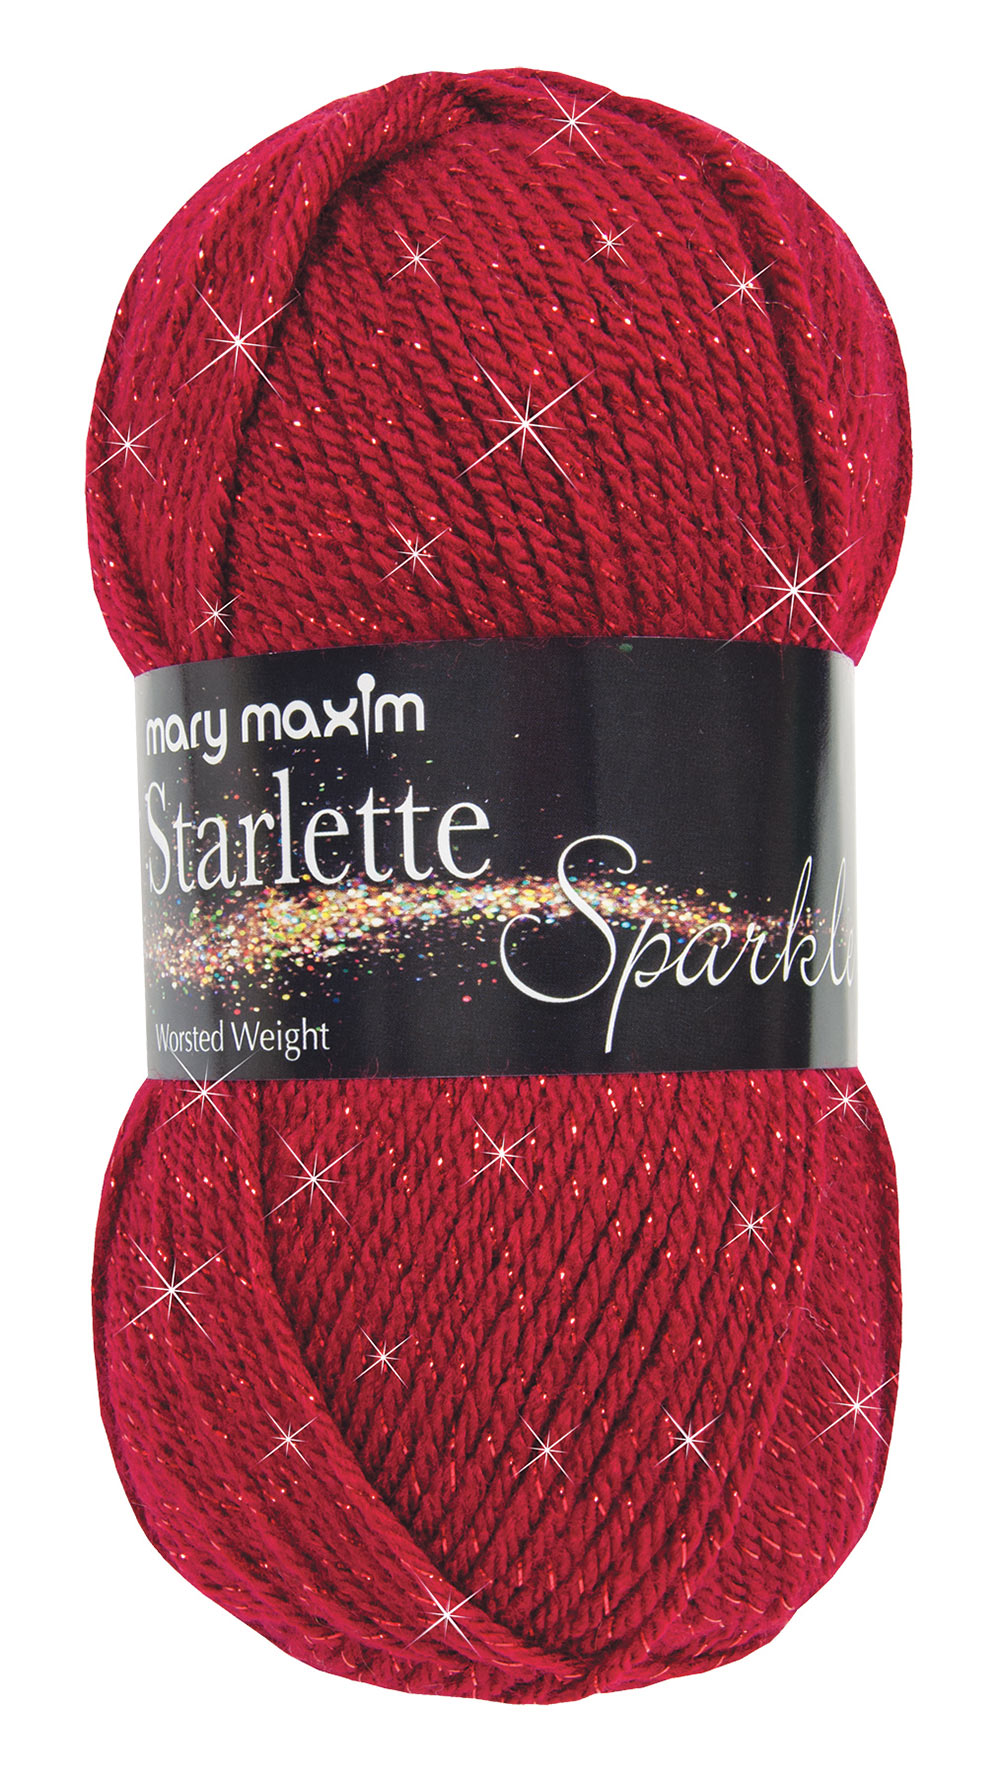 Mary Maxim Starlette Sparkle - Ruby Yarn